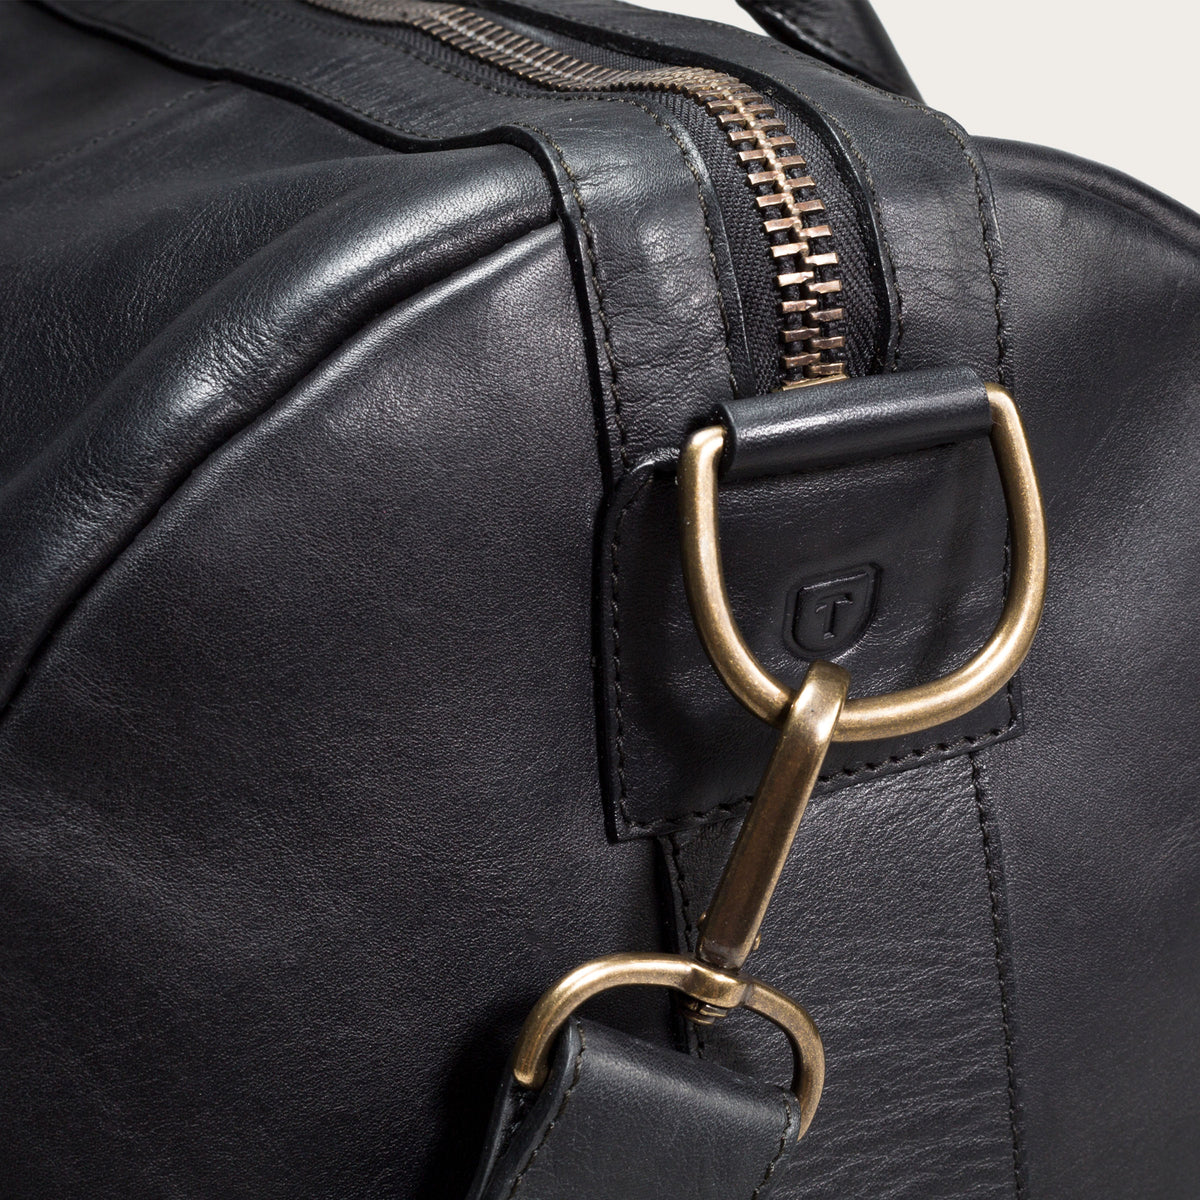 Large Leather Duffle Bag - Handmade Weekender Duffels & Travel Bags